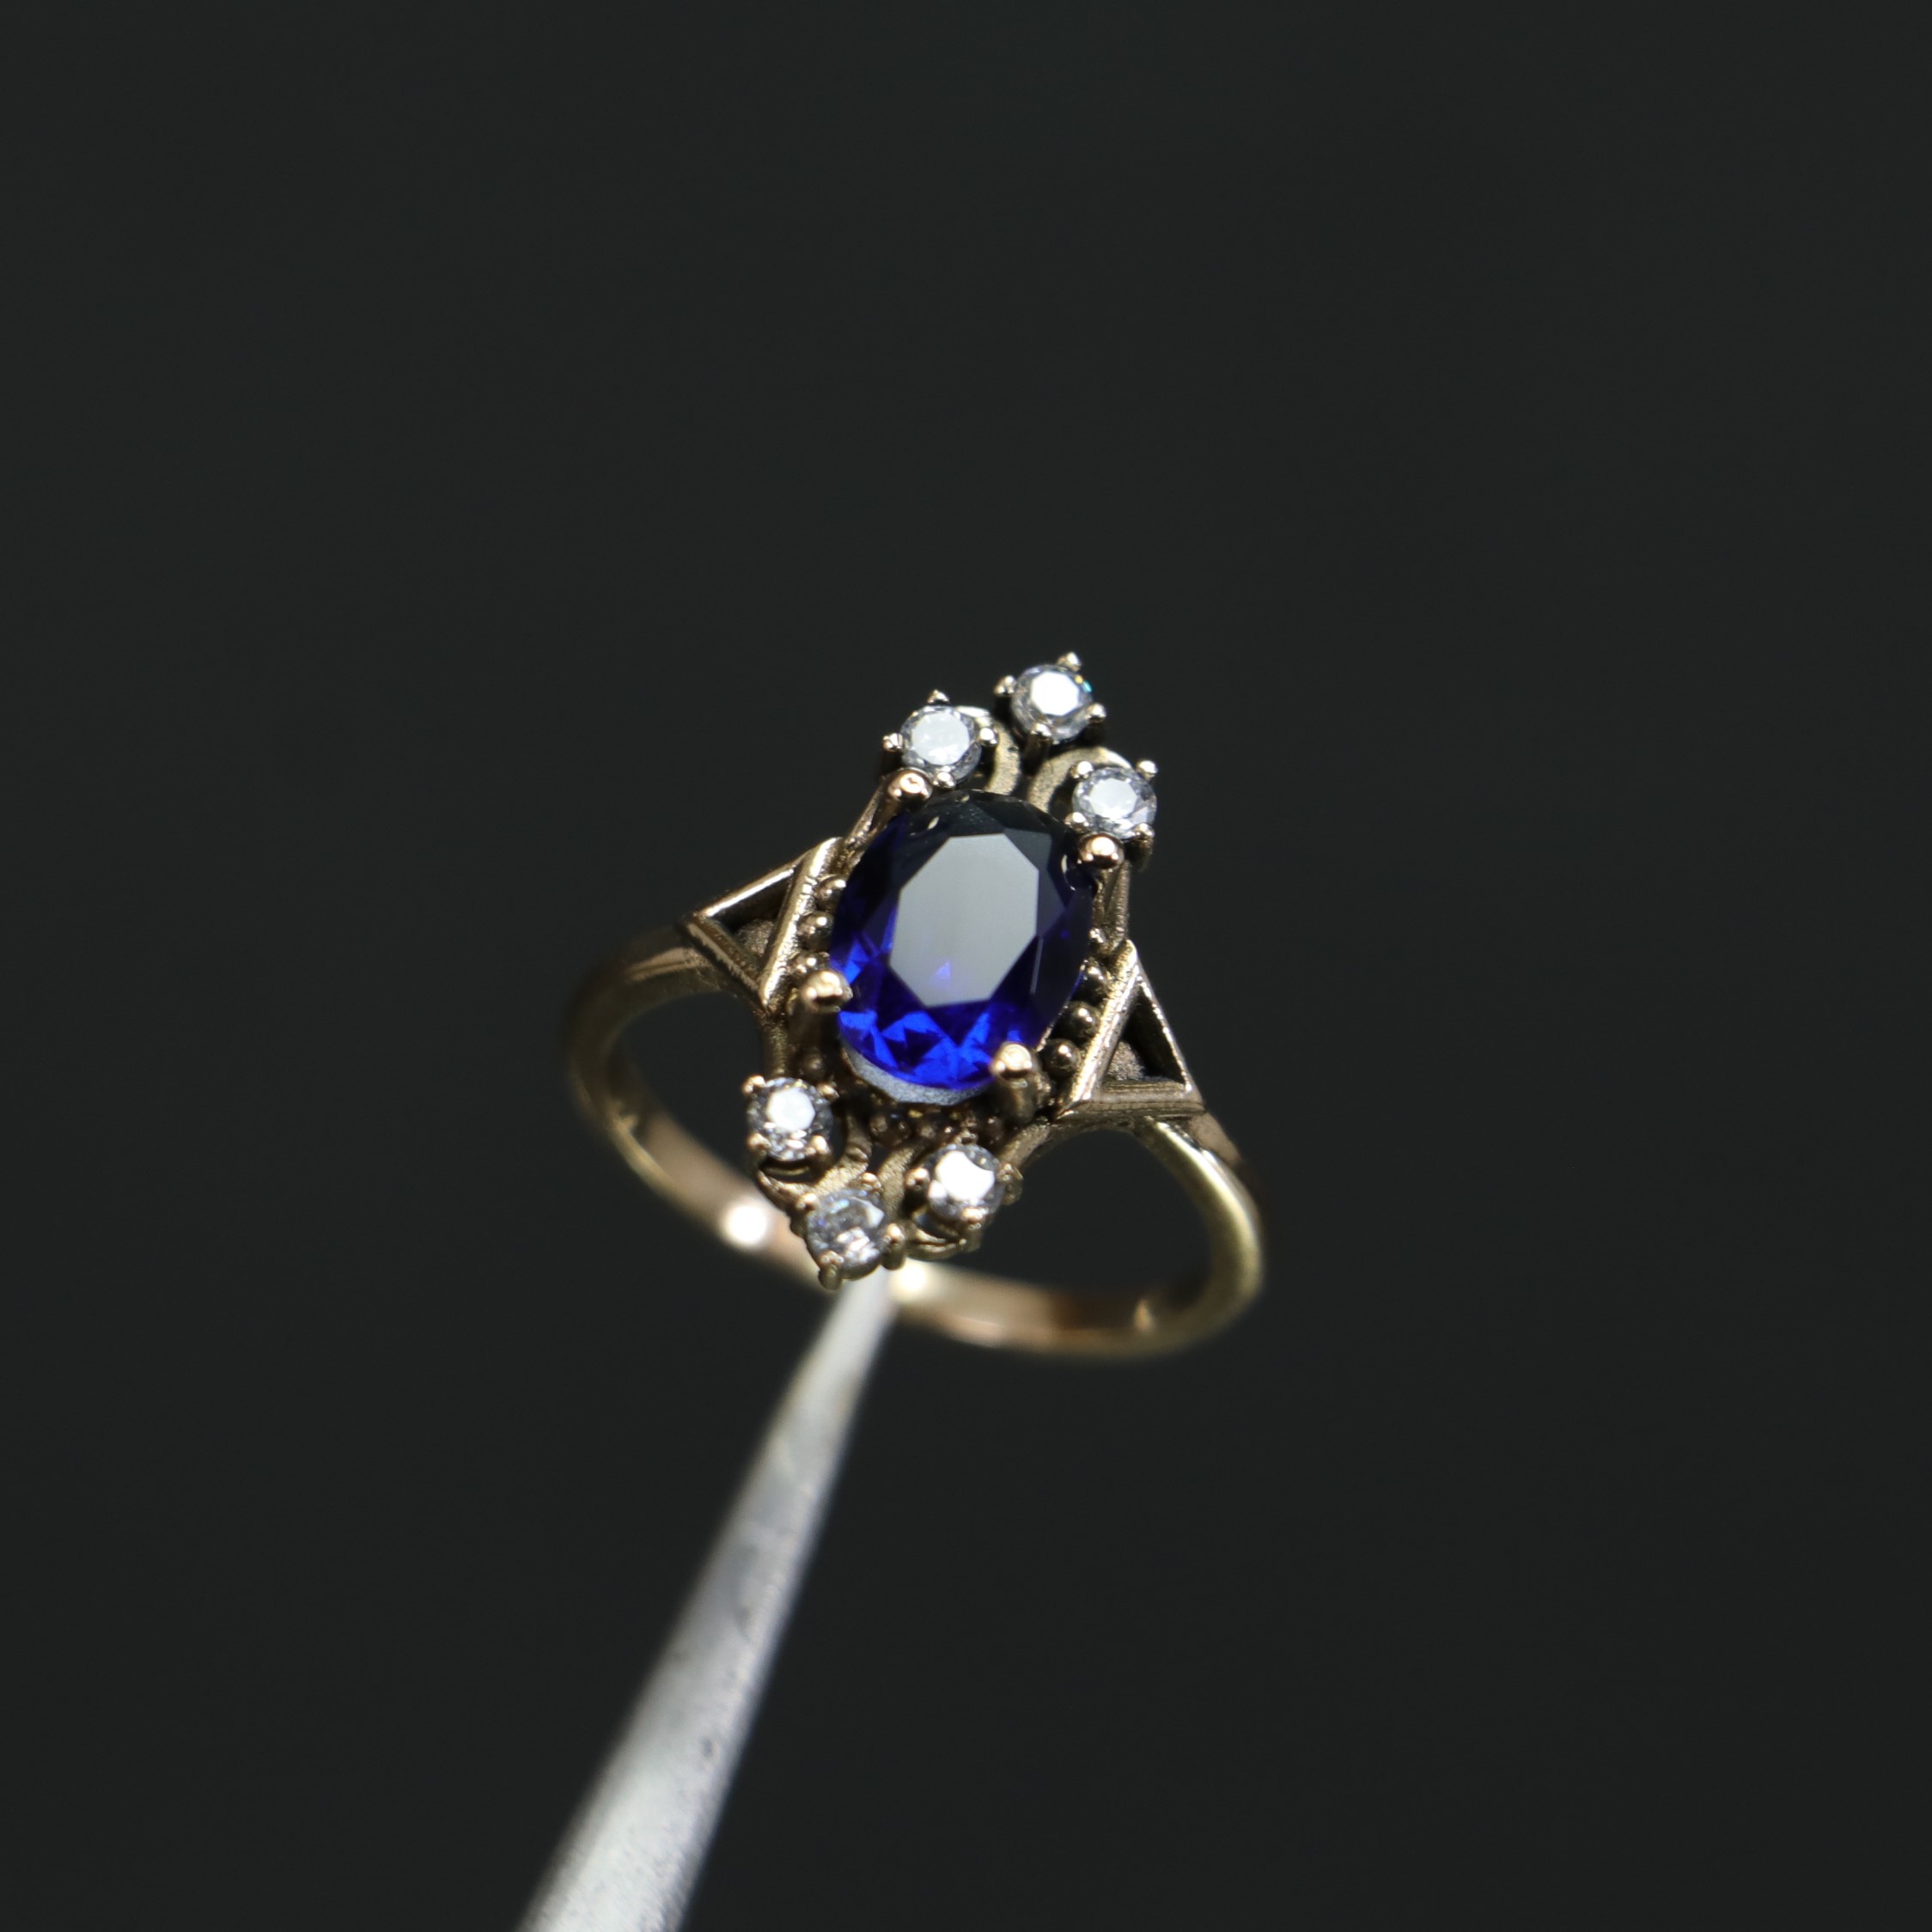 Handmade Sapphire and Swarovski Ring